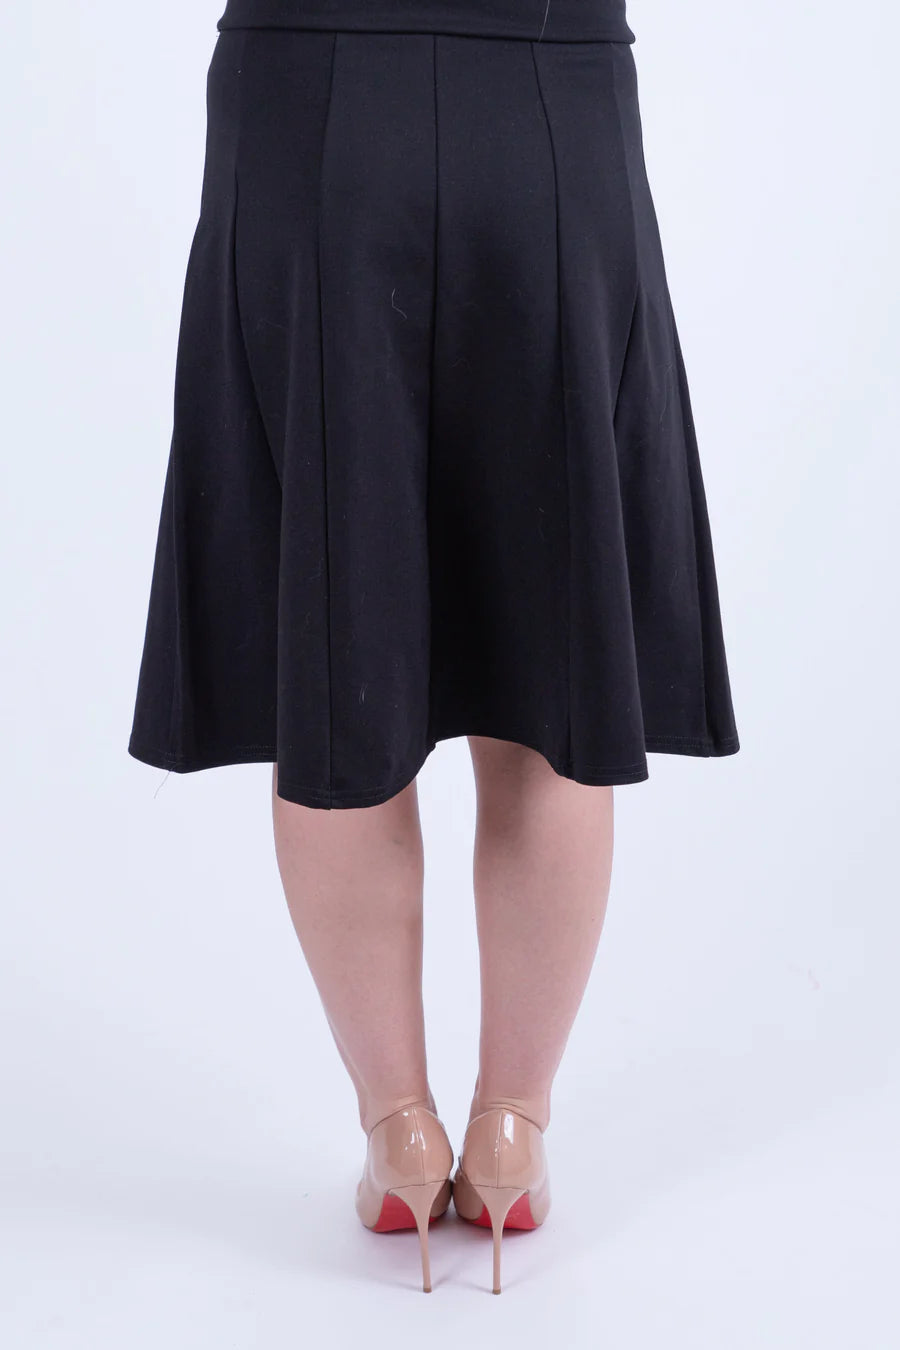 KMW Panel Skirt Black 27" 4827